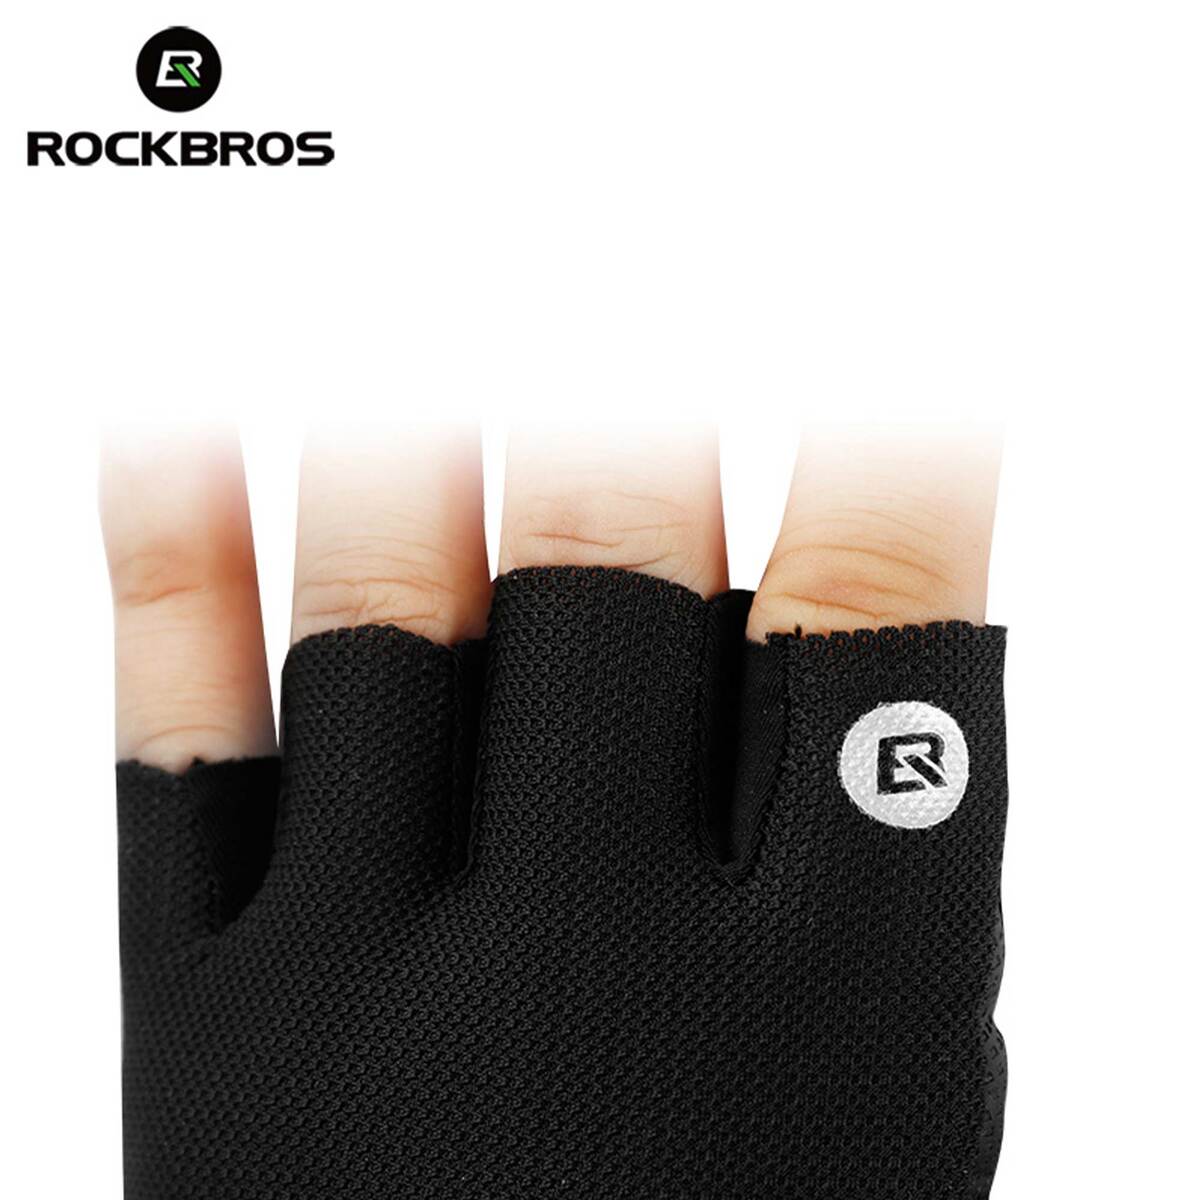 ROCKBROS Half Finger Cycling Gloves Red S106R Medium